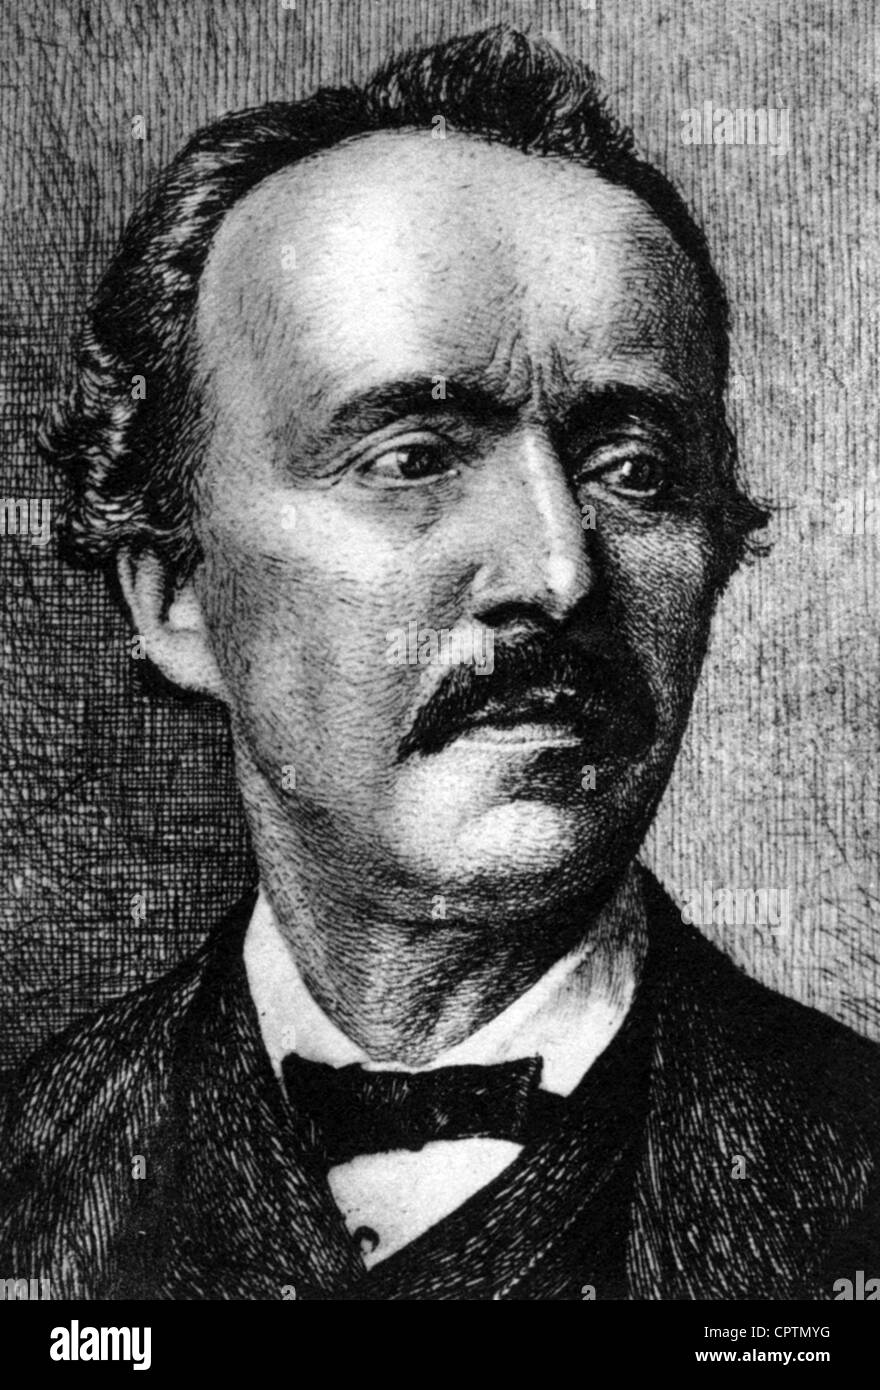 Schliemann, Heinrich, 6.1.1822 - 26.12.1890, archeologo tedesco, ritratto, incisione, Foto Stock